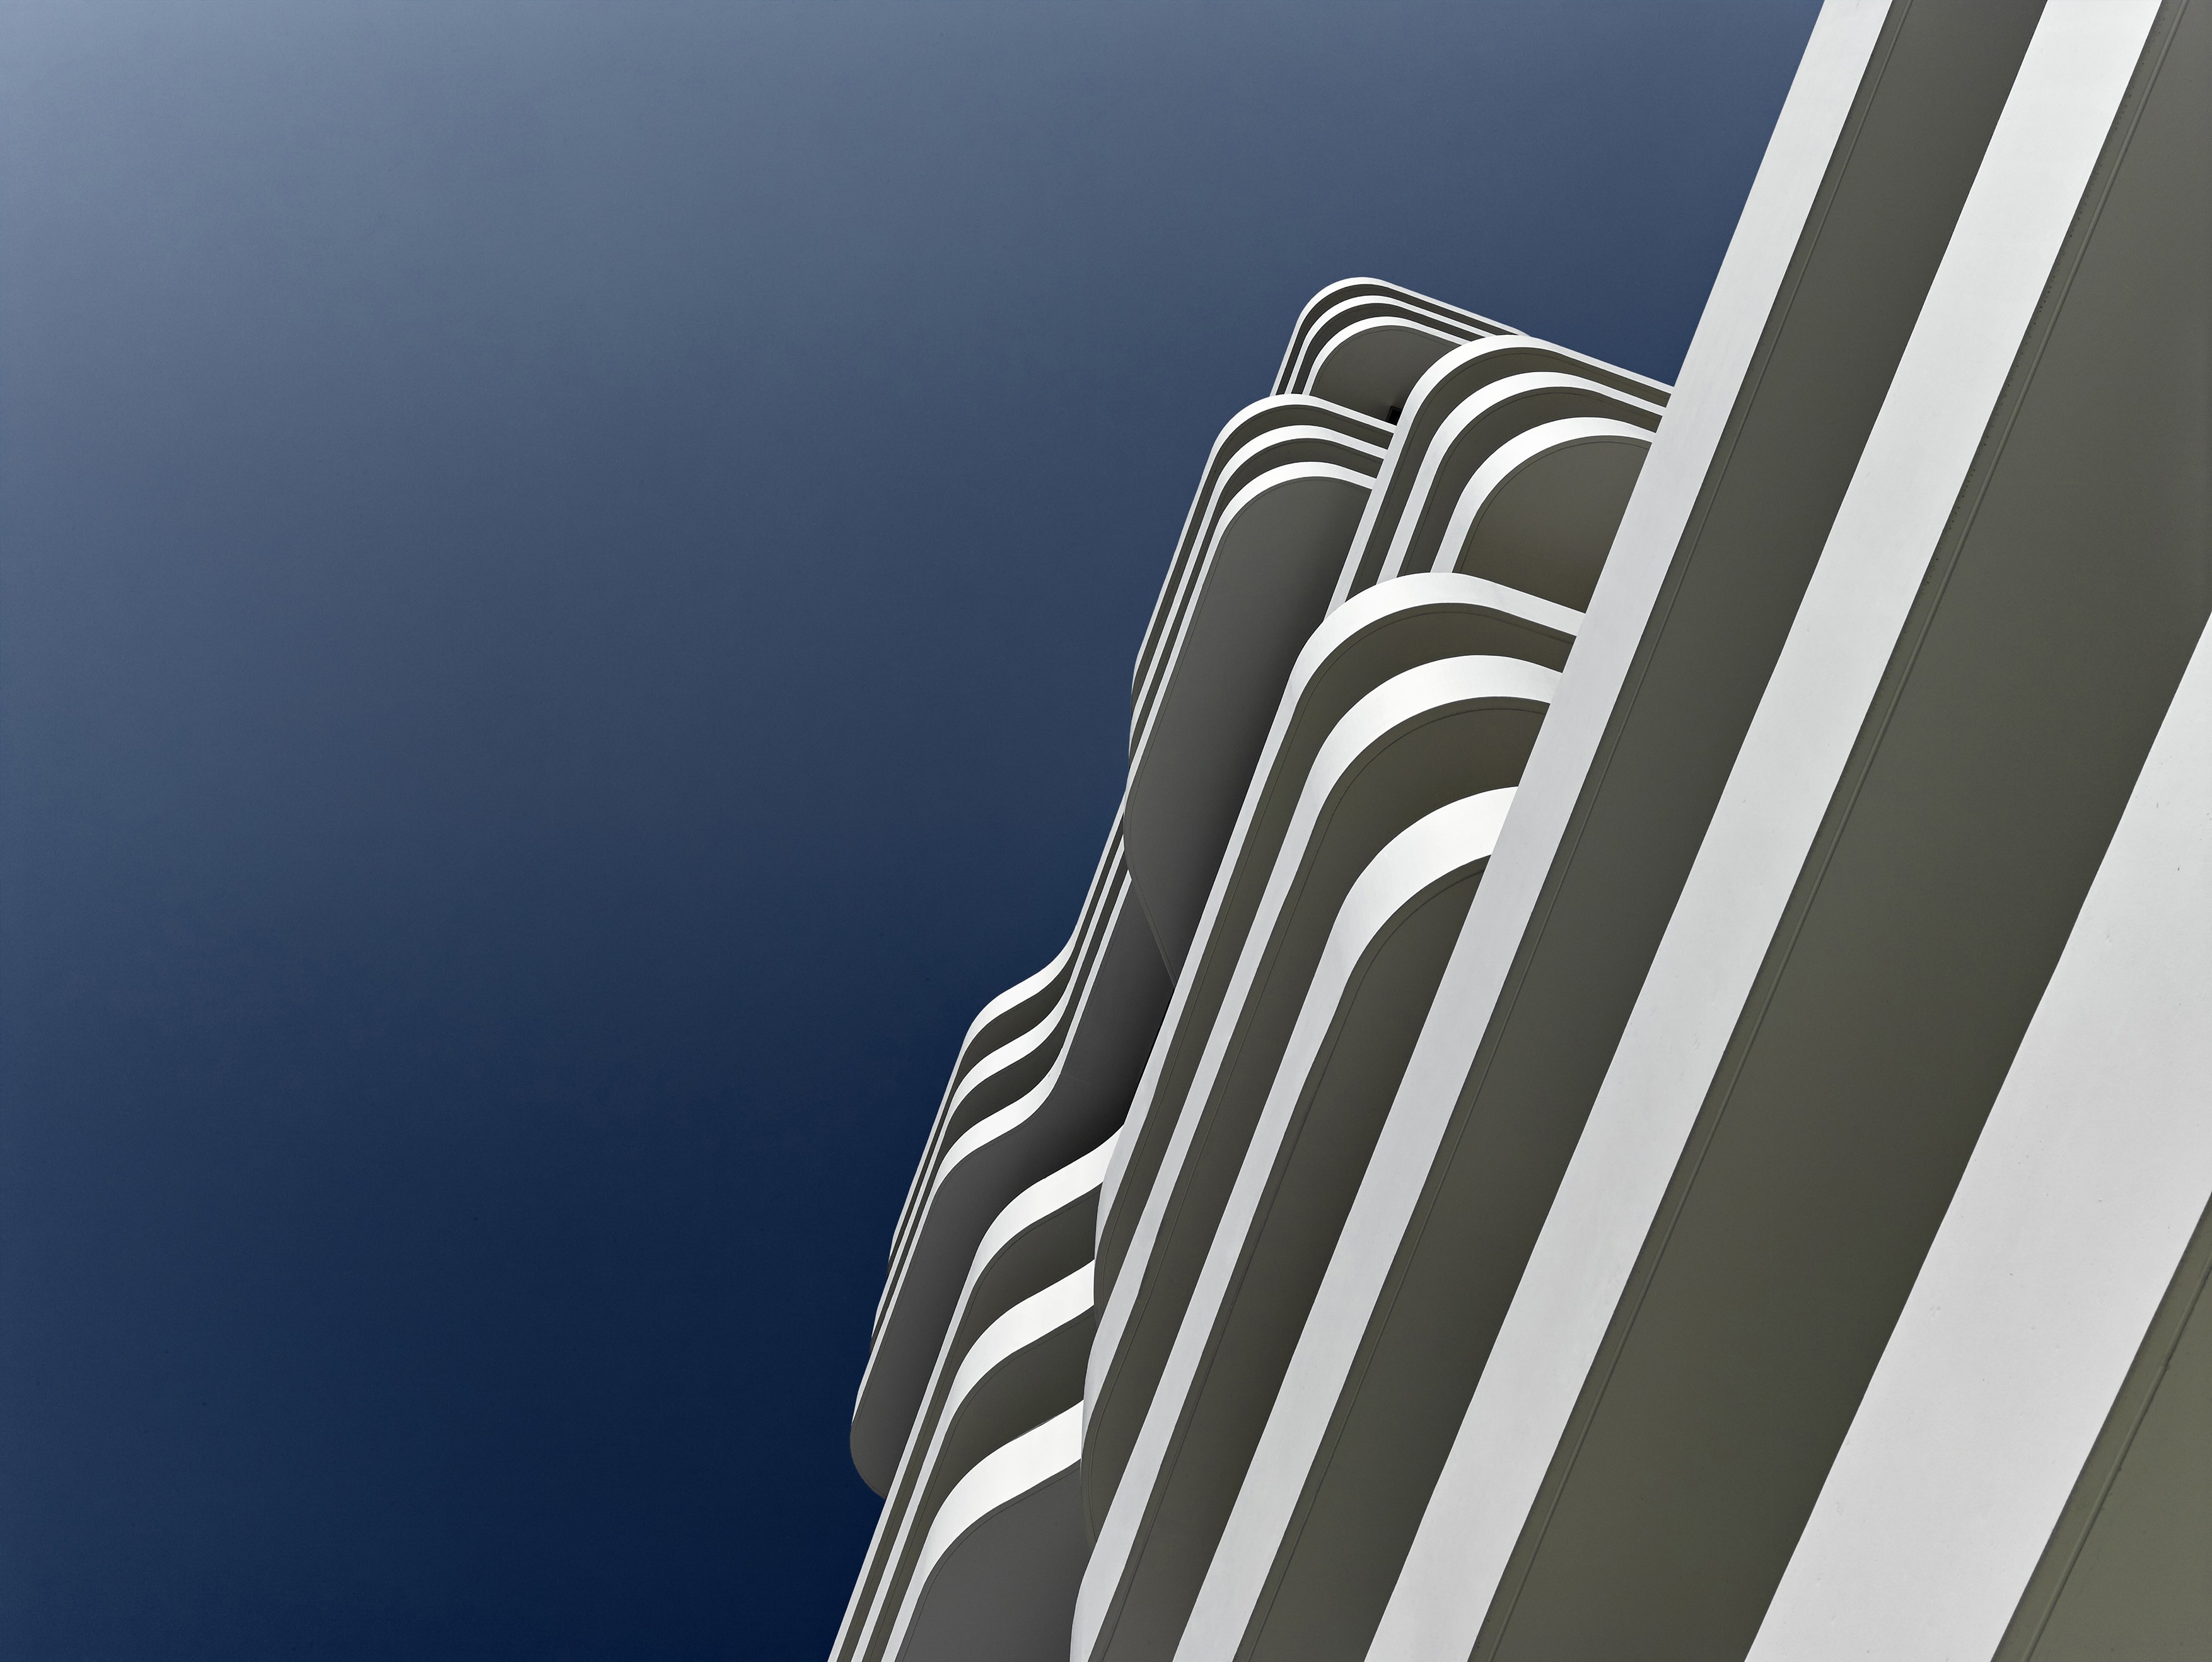 Die Ästhetik des IN-Towers basiert auf den charakteristischen Balkonen<br><span class='image_copyright'>ATP/Becker</span><br>